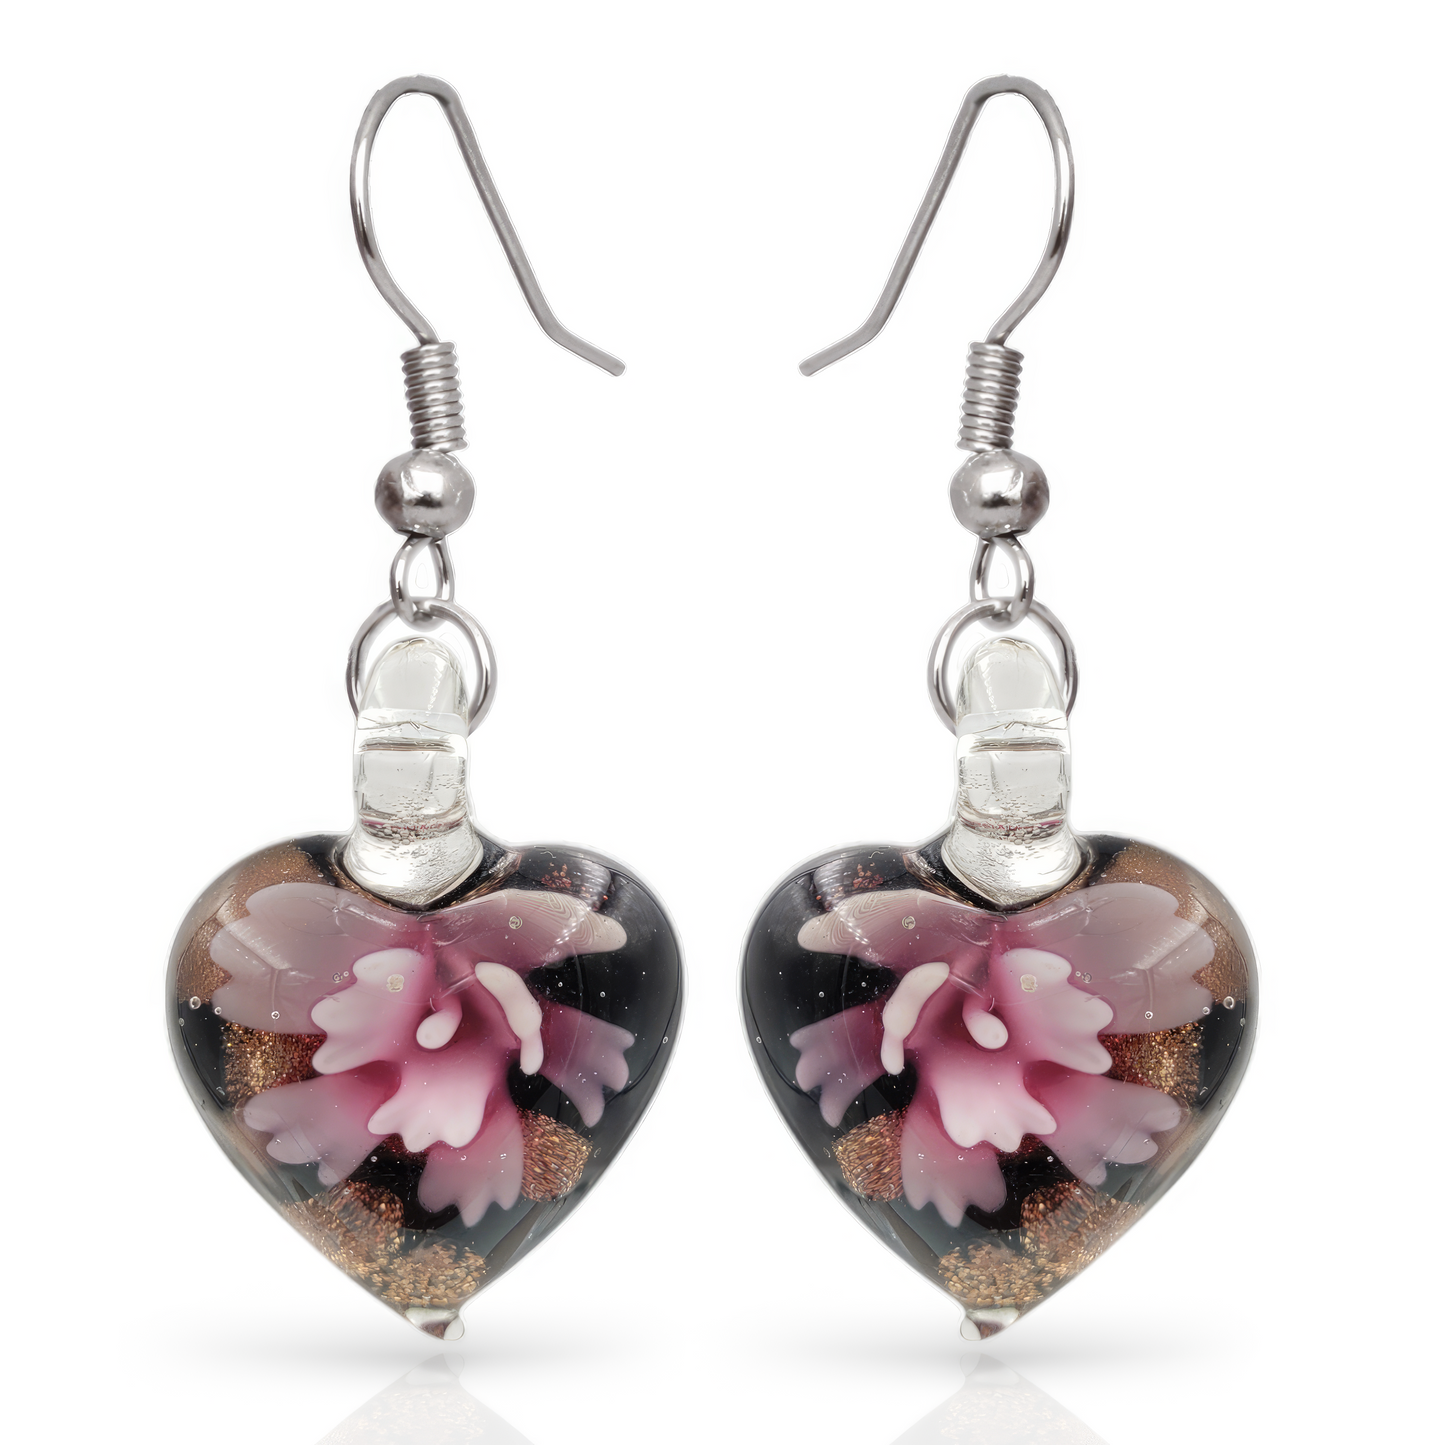 Besheek Handmade Murano-inpired Pink Flower in Heart Fused Glass Dangle Earrings | Hypoallergenic Boho Beach Gala Wedding Style Fashion Earrings